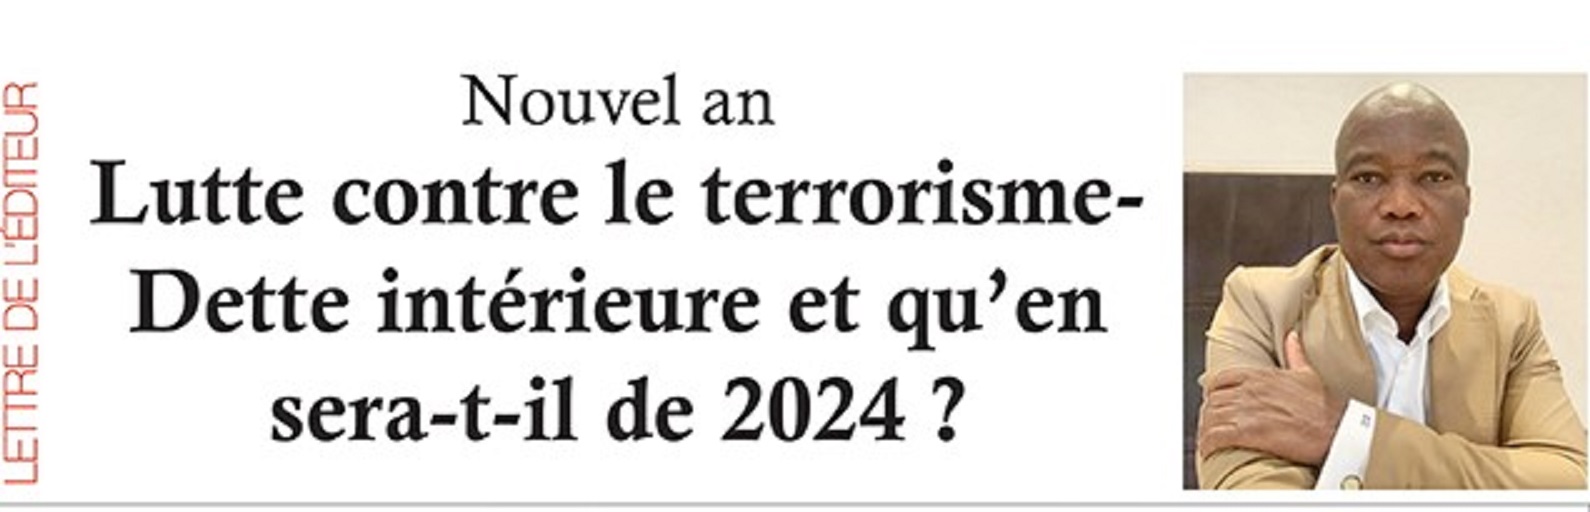 Nouvel an : Lutte contre le terrorisme-Dette intérieure e t qu’en sera-t-il de 2024 ?